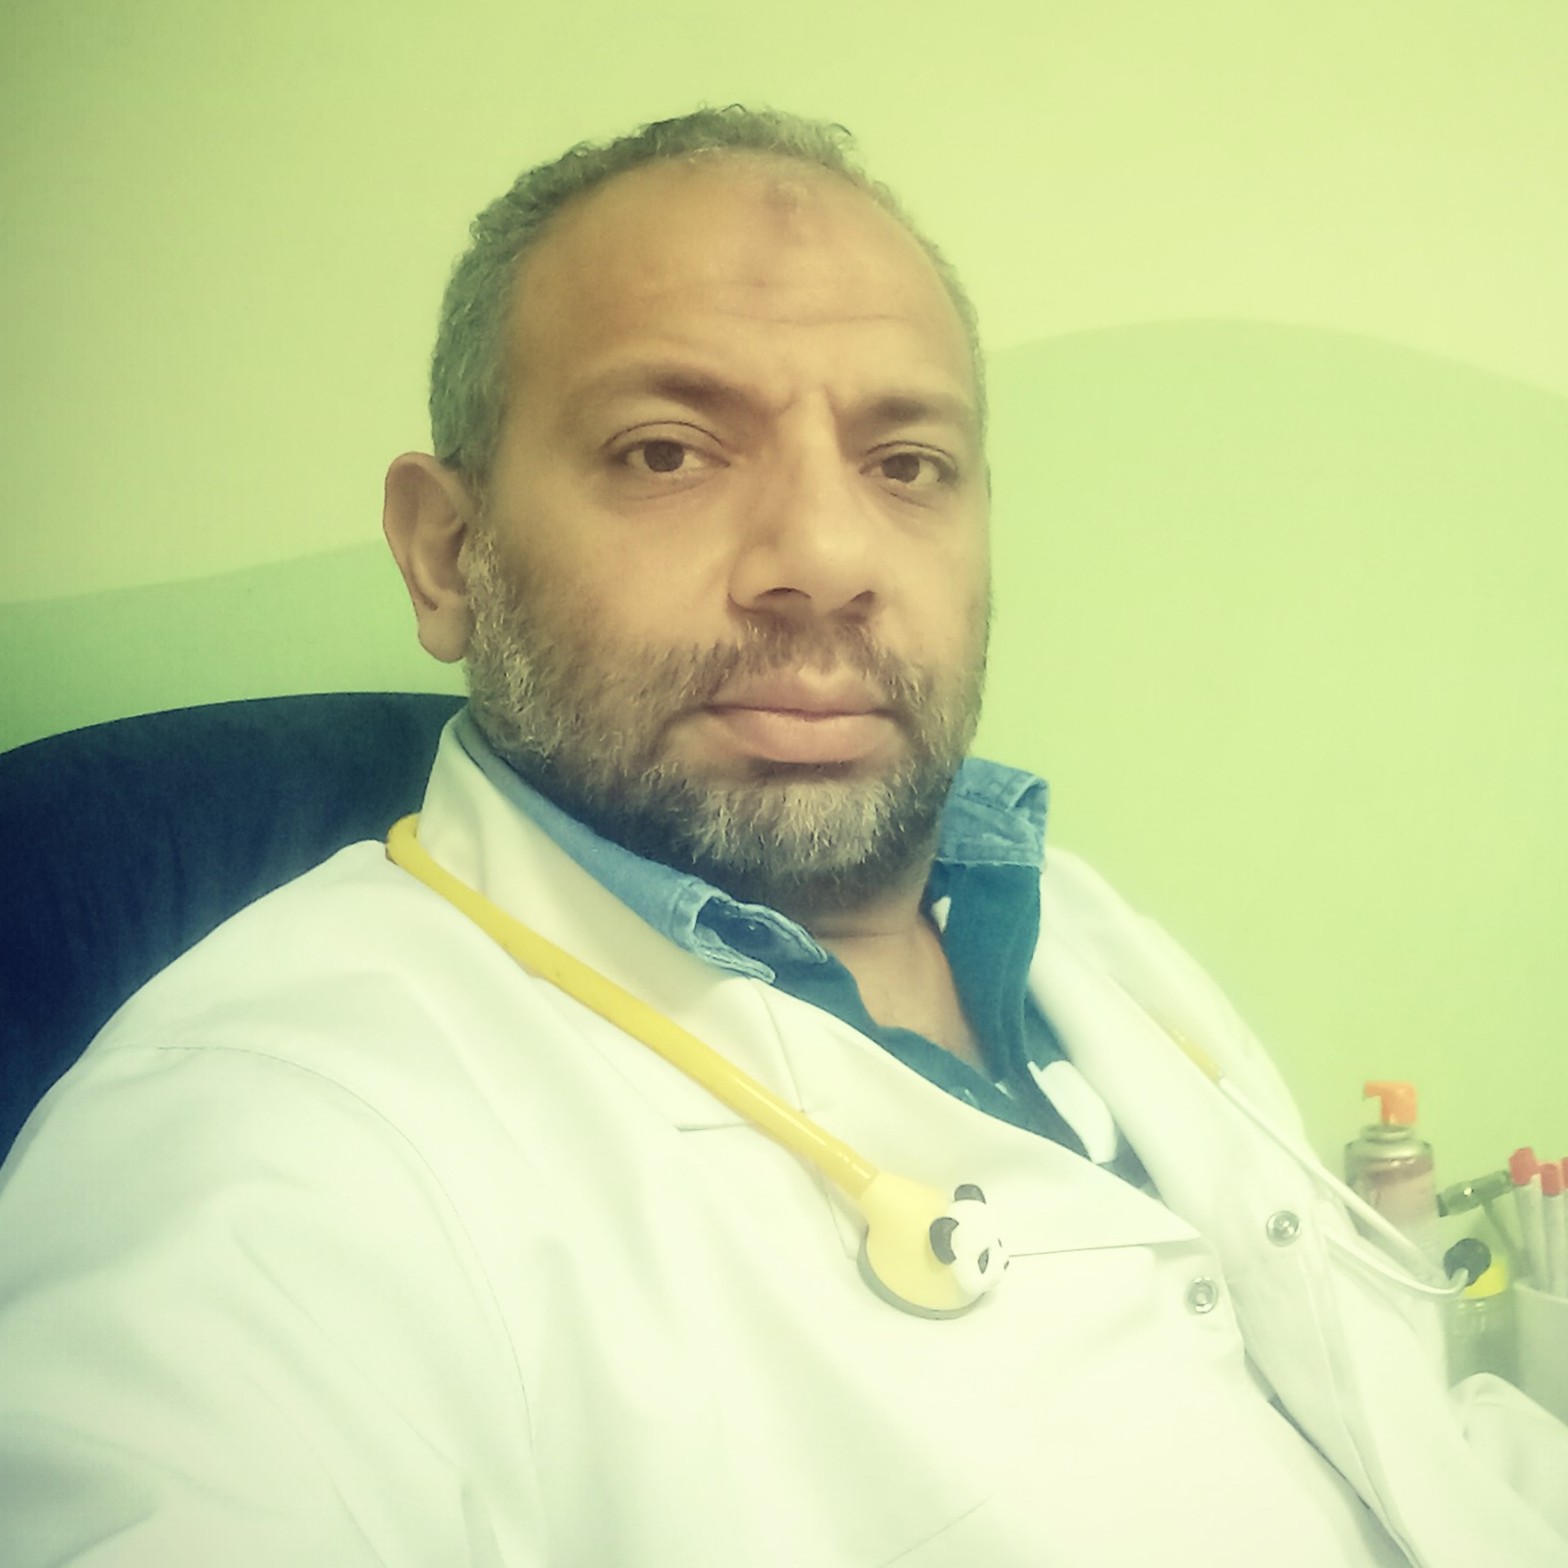 Dr. Mohamed Aly Khalaf